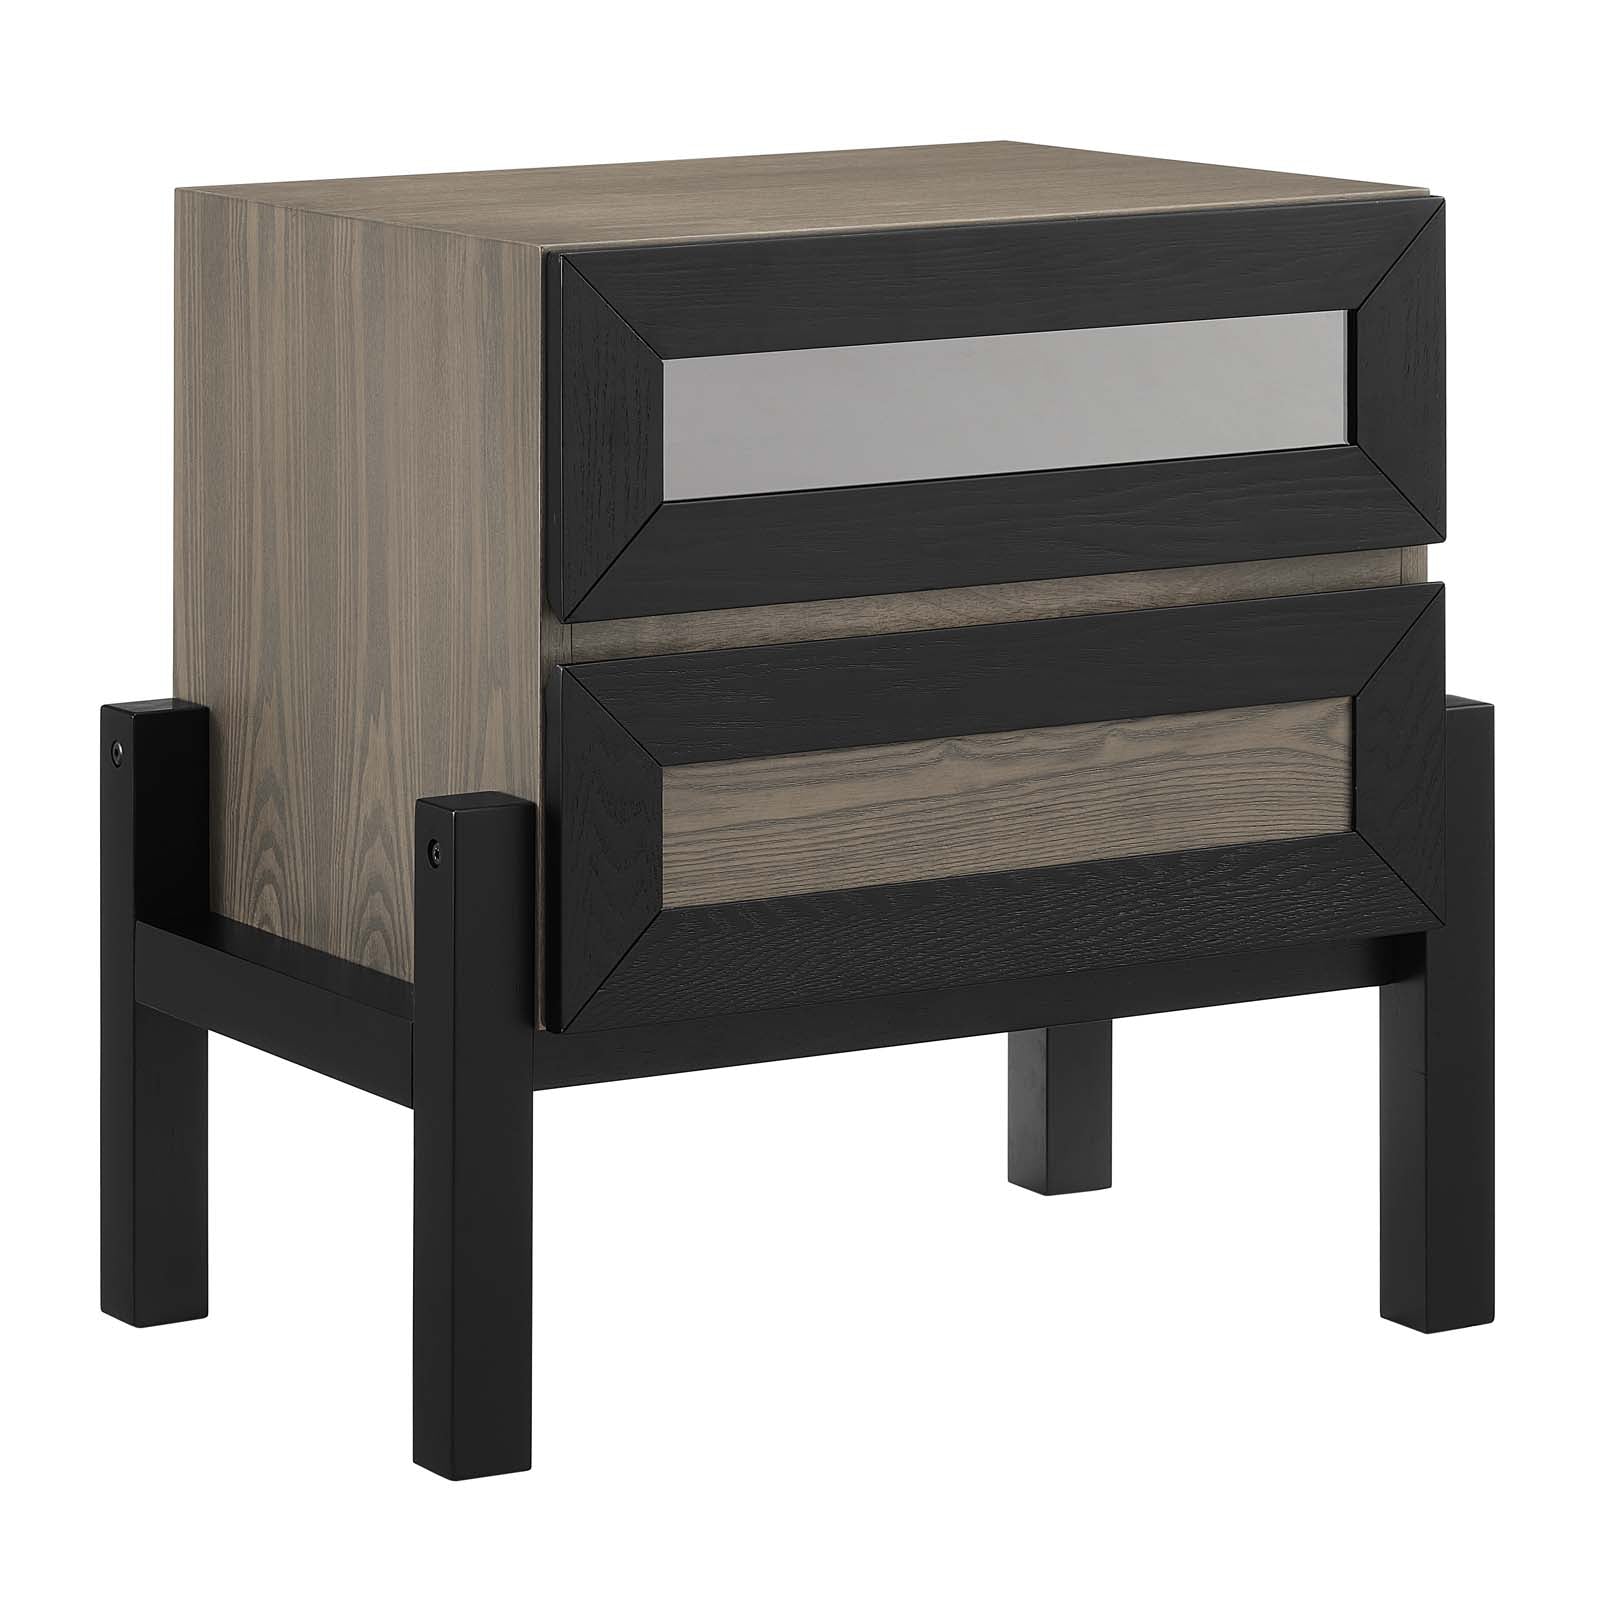 Modway Nightstands & Side Tables - Merritt Nightstand Oak